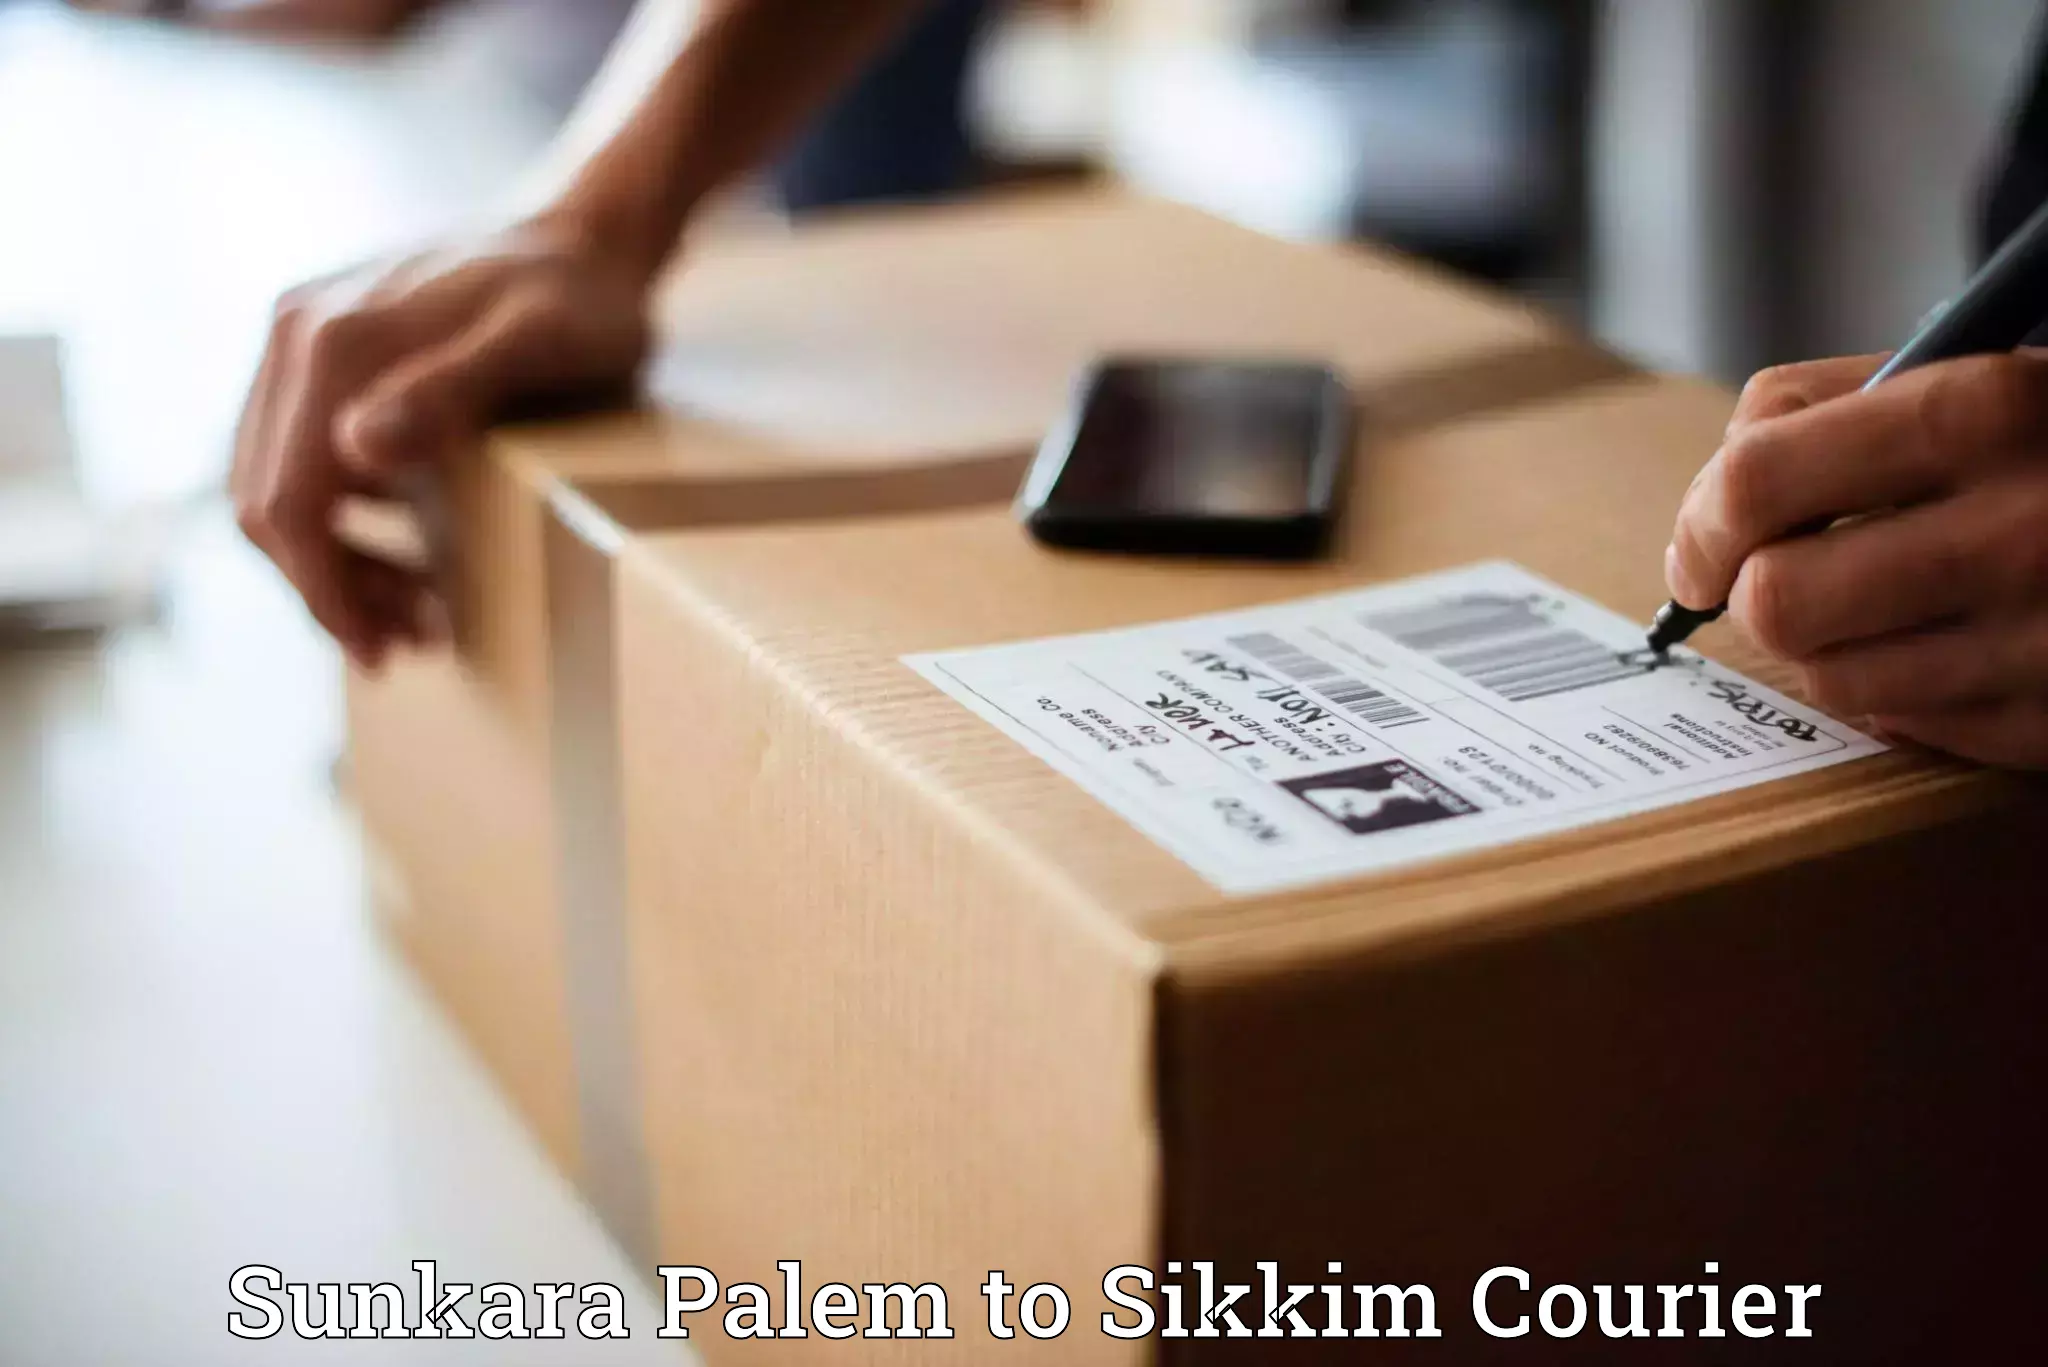 Logistics efficiency Sunkara Palem to Sikkim